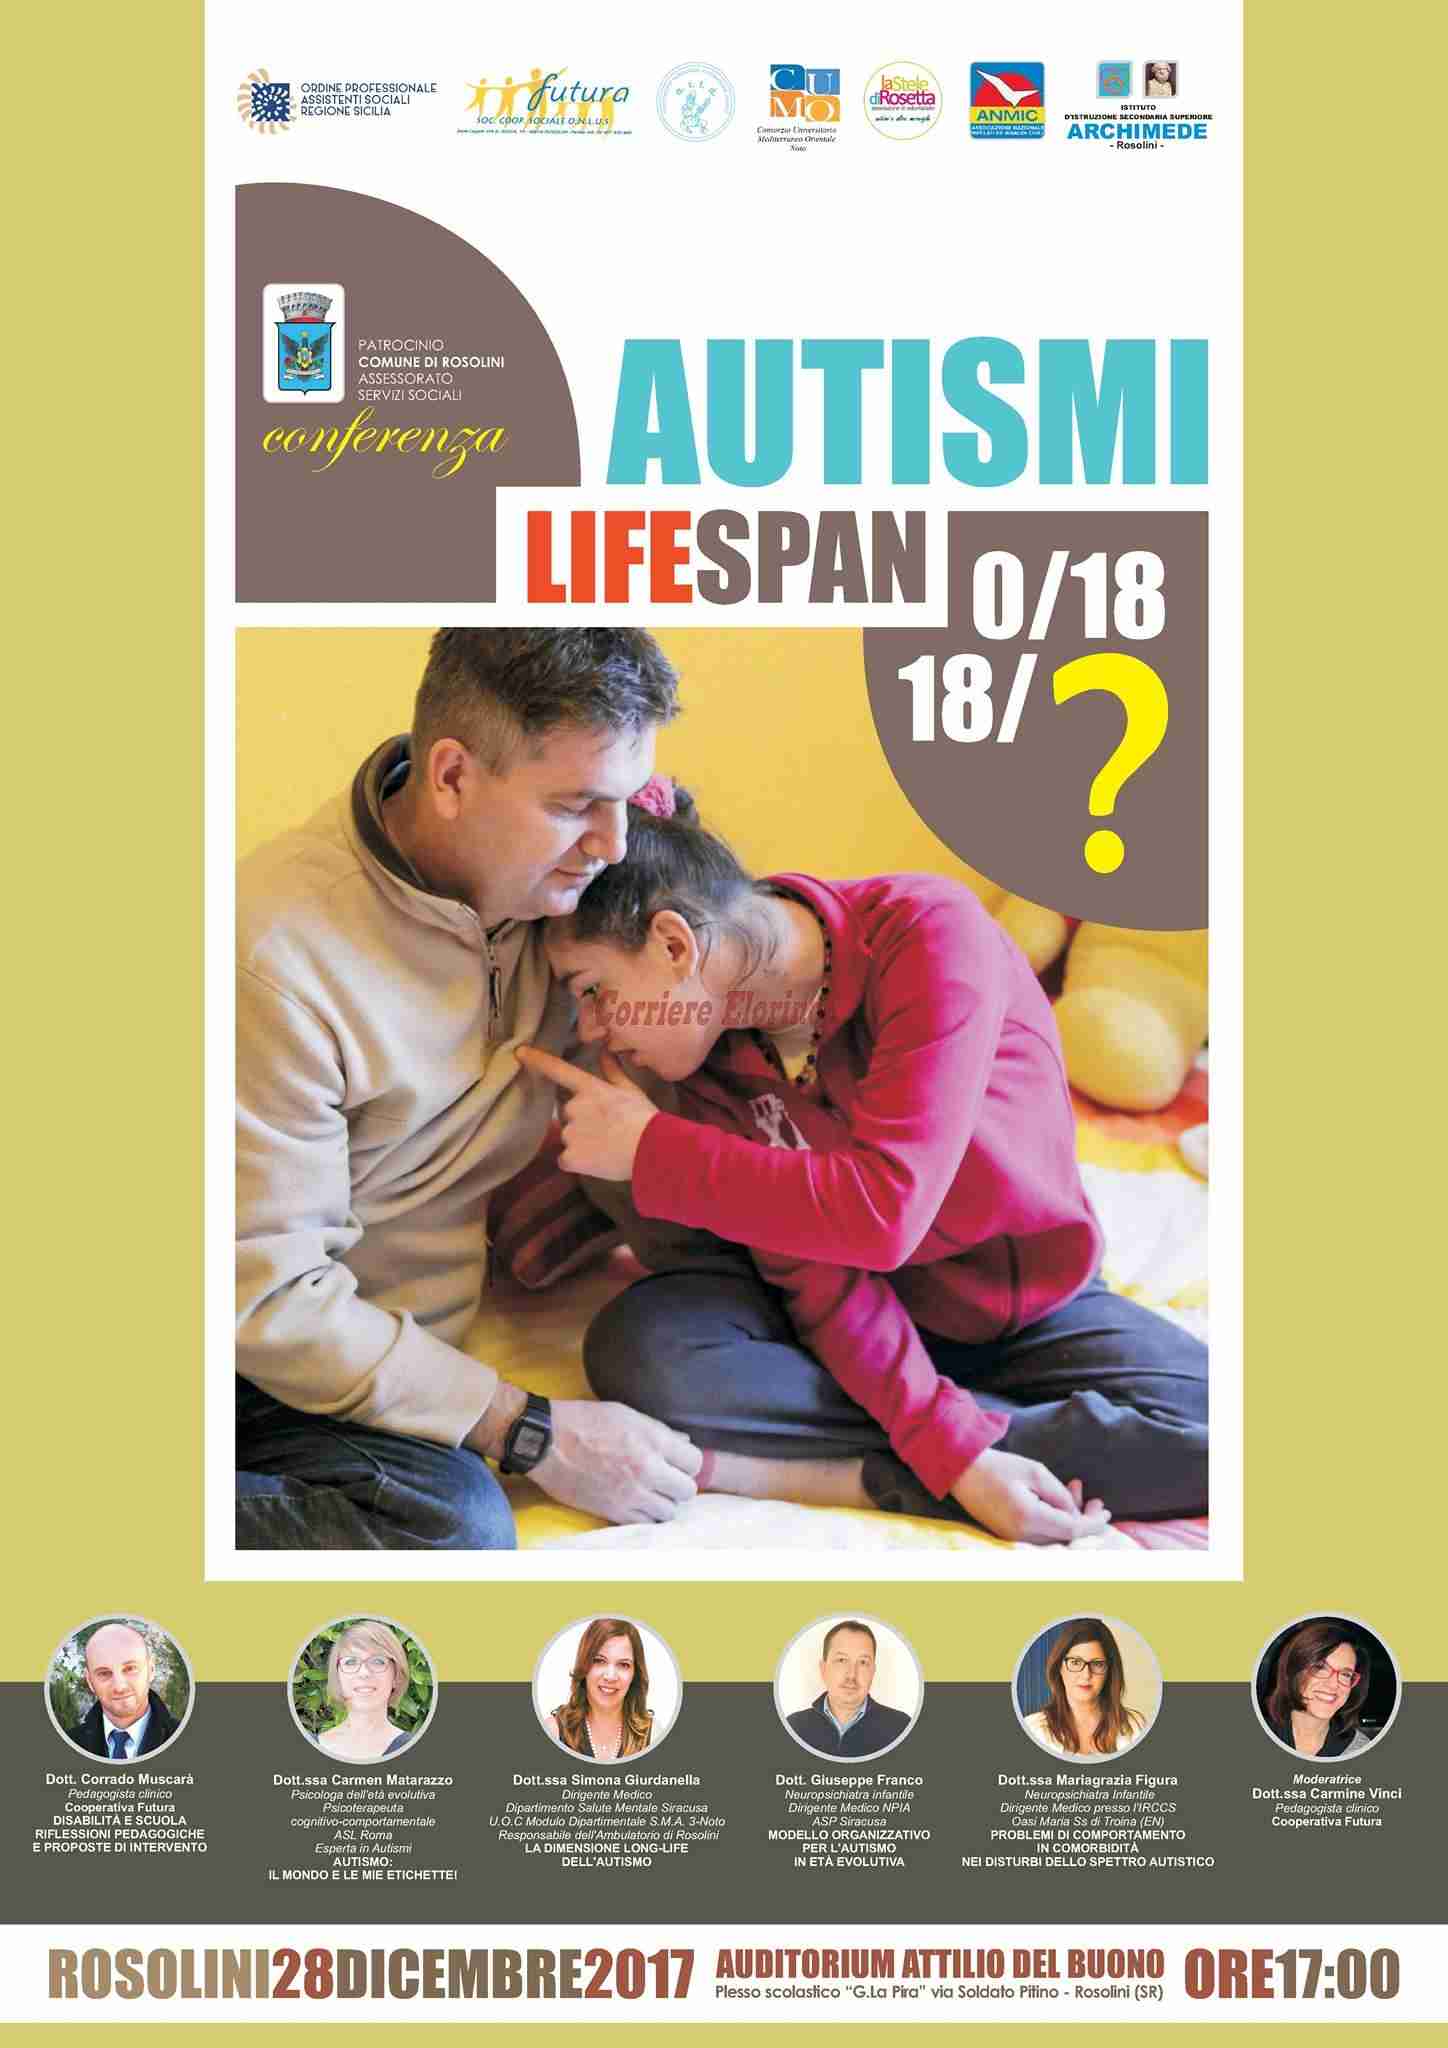 “Autismi LifeSpan 0/18- 18/?”, il 28 dicembre al Del Buono sei esperti dialogano sul tema